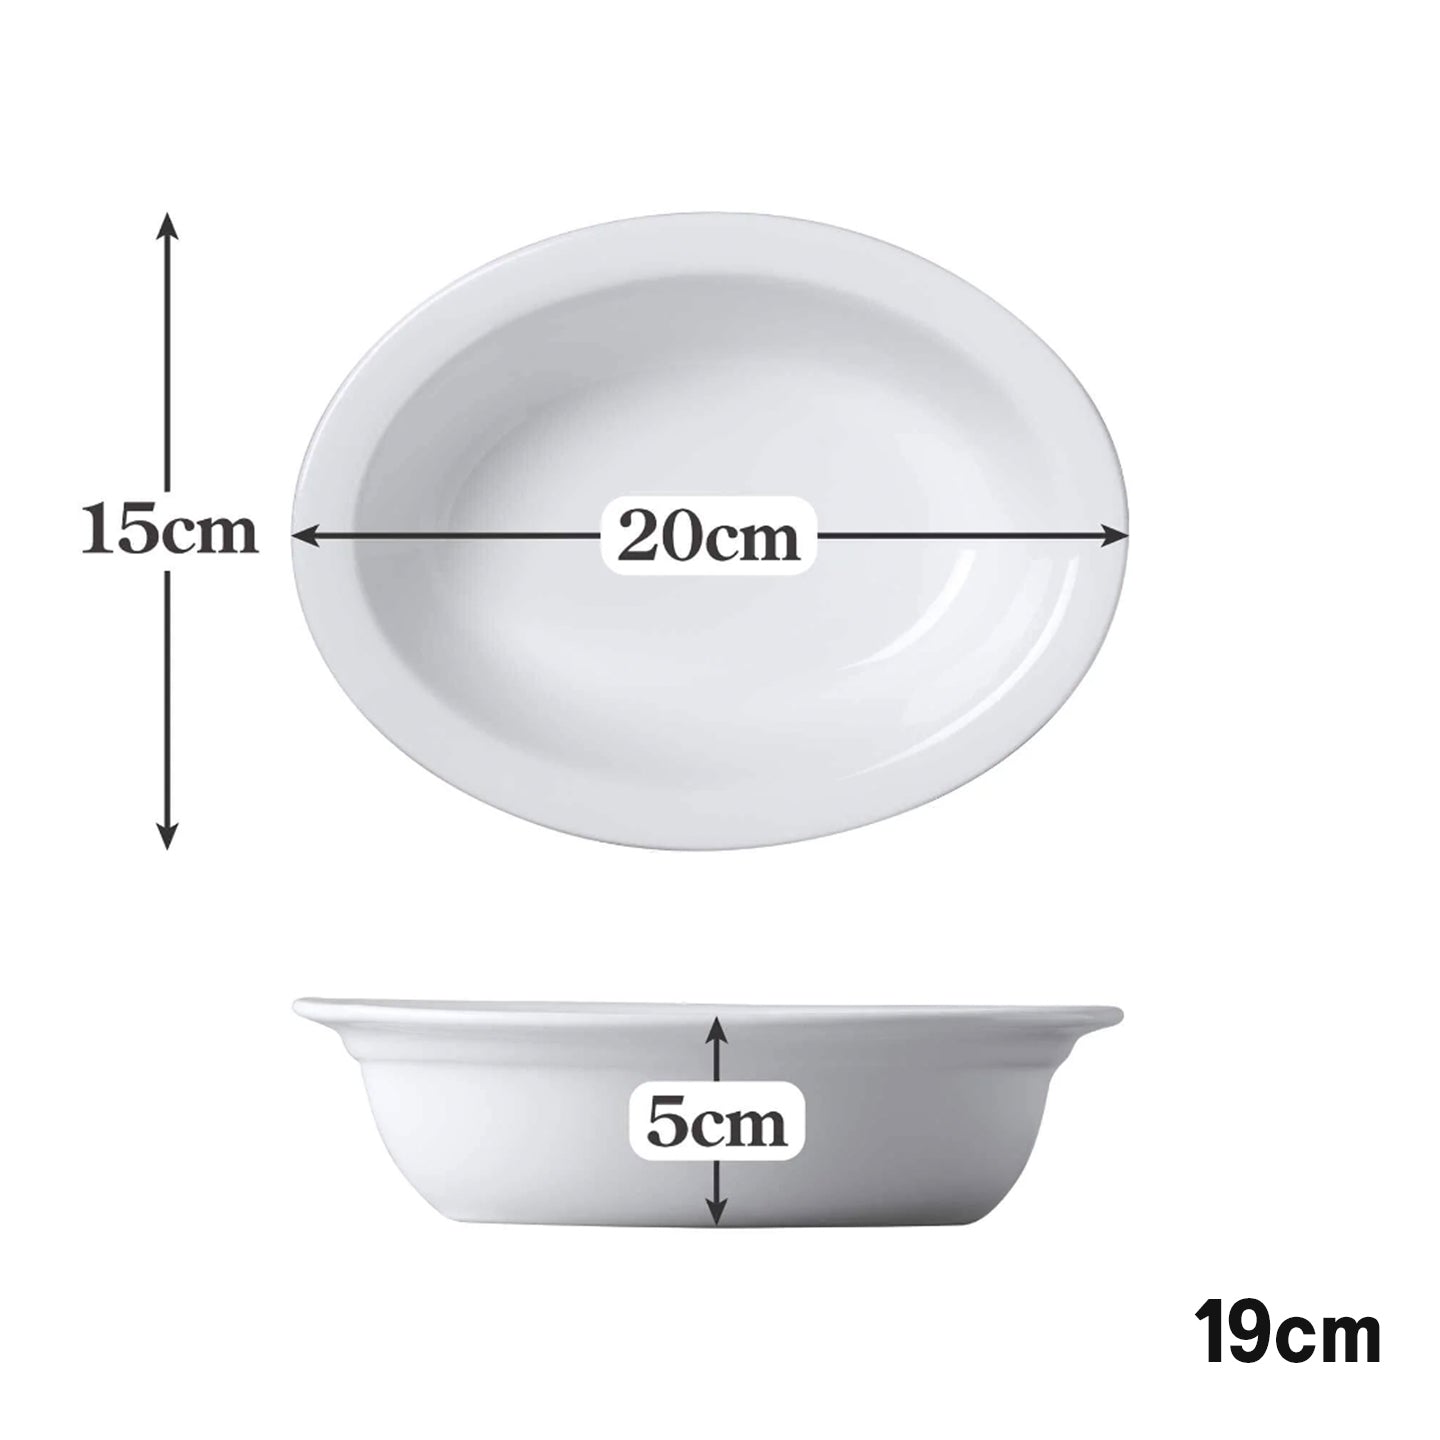 Porcelain Oval Pie Dish